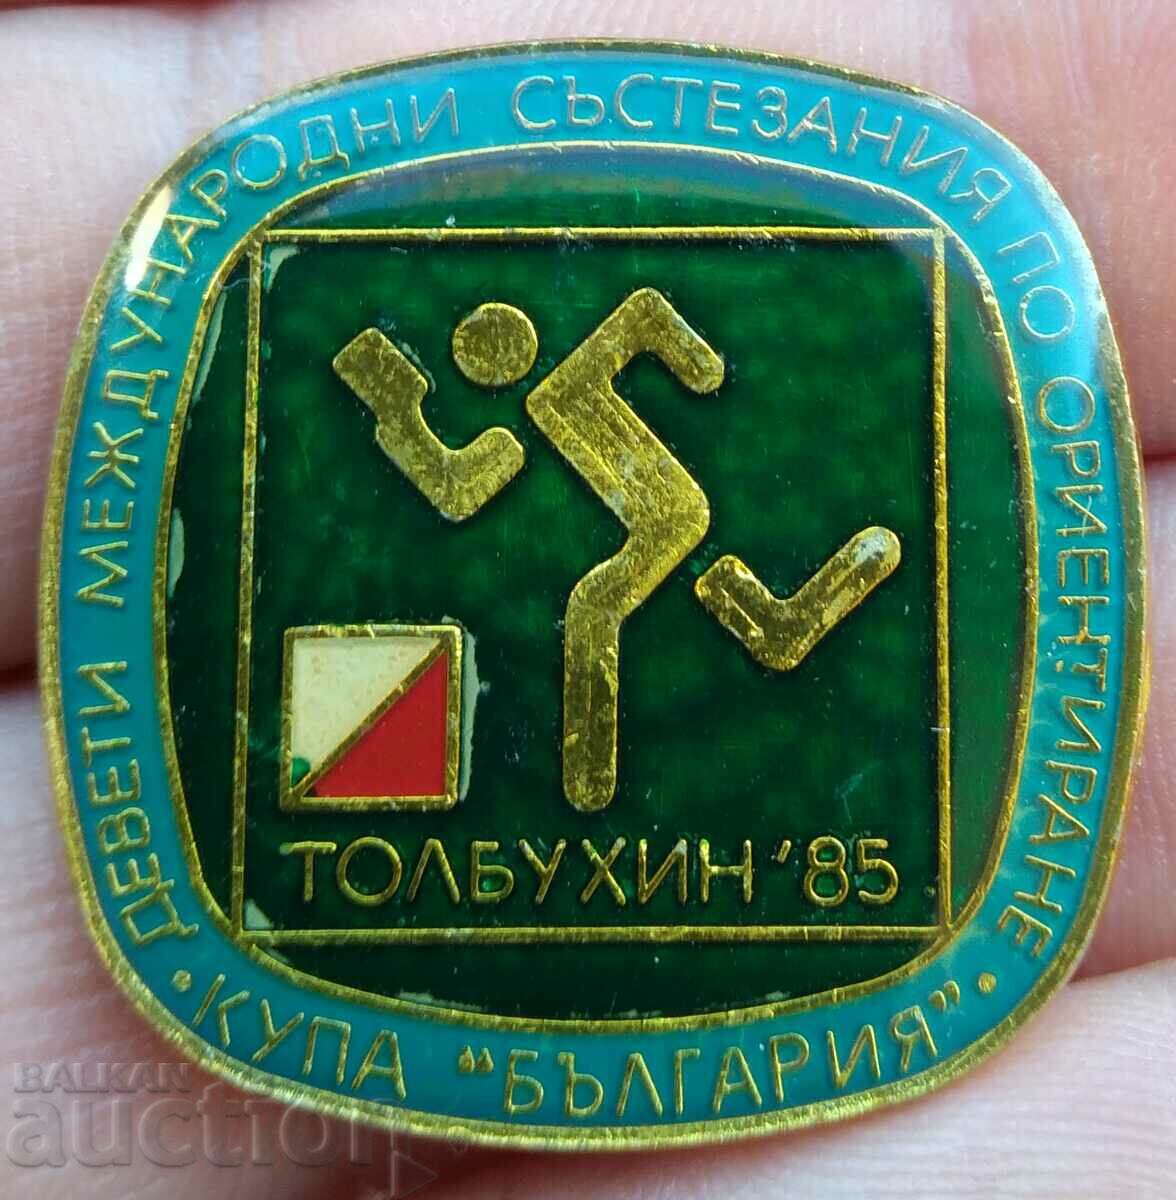 Σήμα 11682 - Κύπελλο προσανατολισμού διαγωνισμών Βουλγαρίας - Τολμπούχι